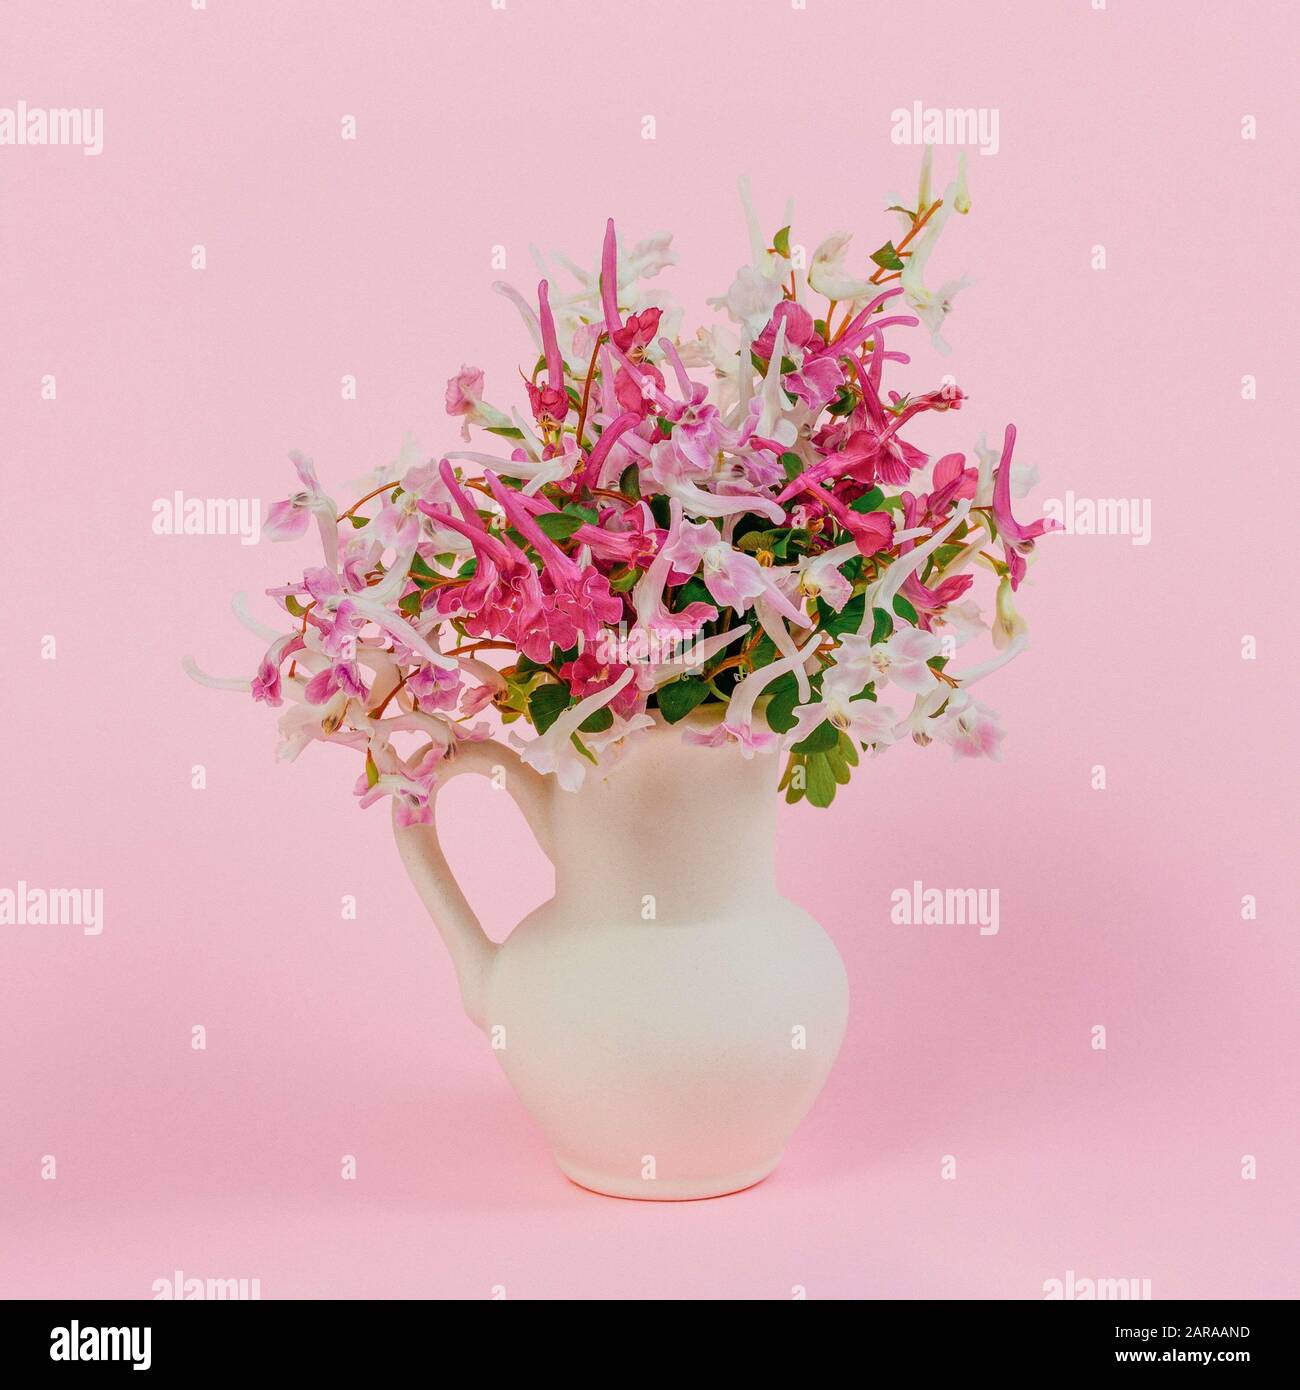 Stillleben mit einem Blumenstrauß aus rosa, weißen und violett roten Blumen in einer weißen Kanne auf pinkfarbenem Hintergrund Stockfoto